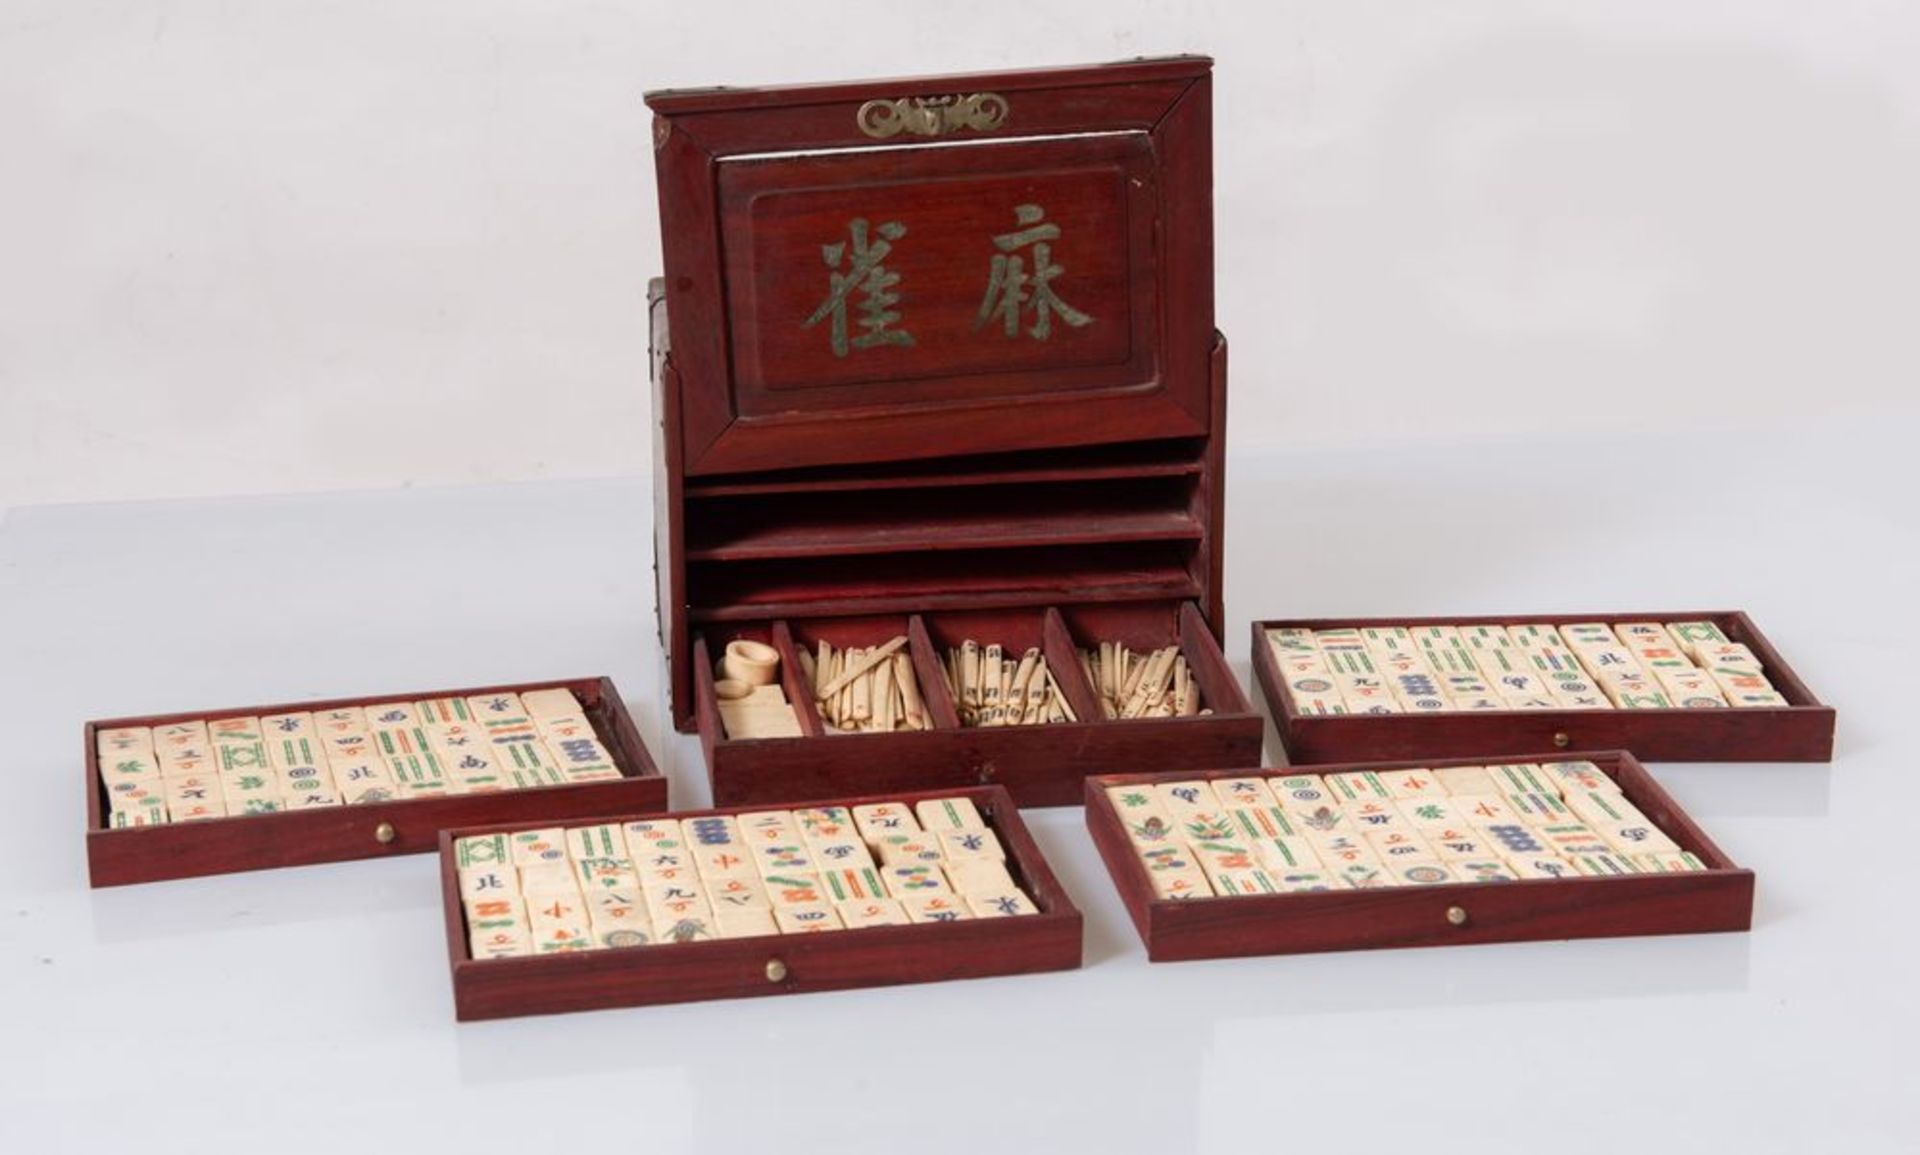 Scatola contenente gioco del MAH JONG in legno con applicazioni in bronzo. Pedine in legno di bamboo